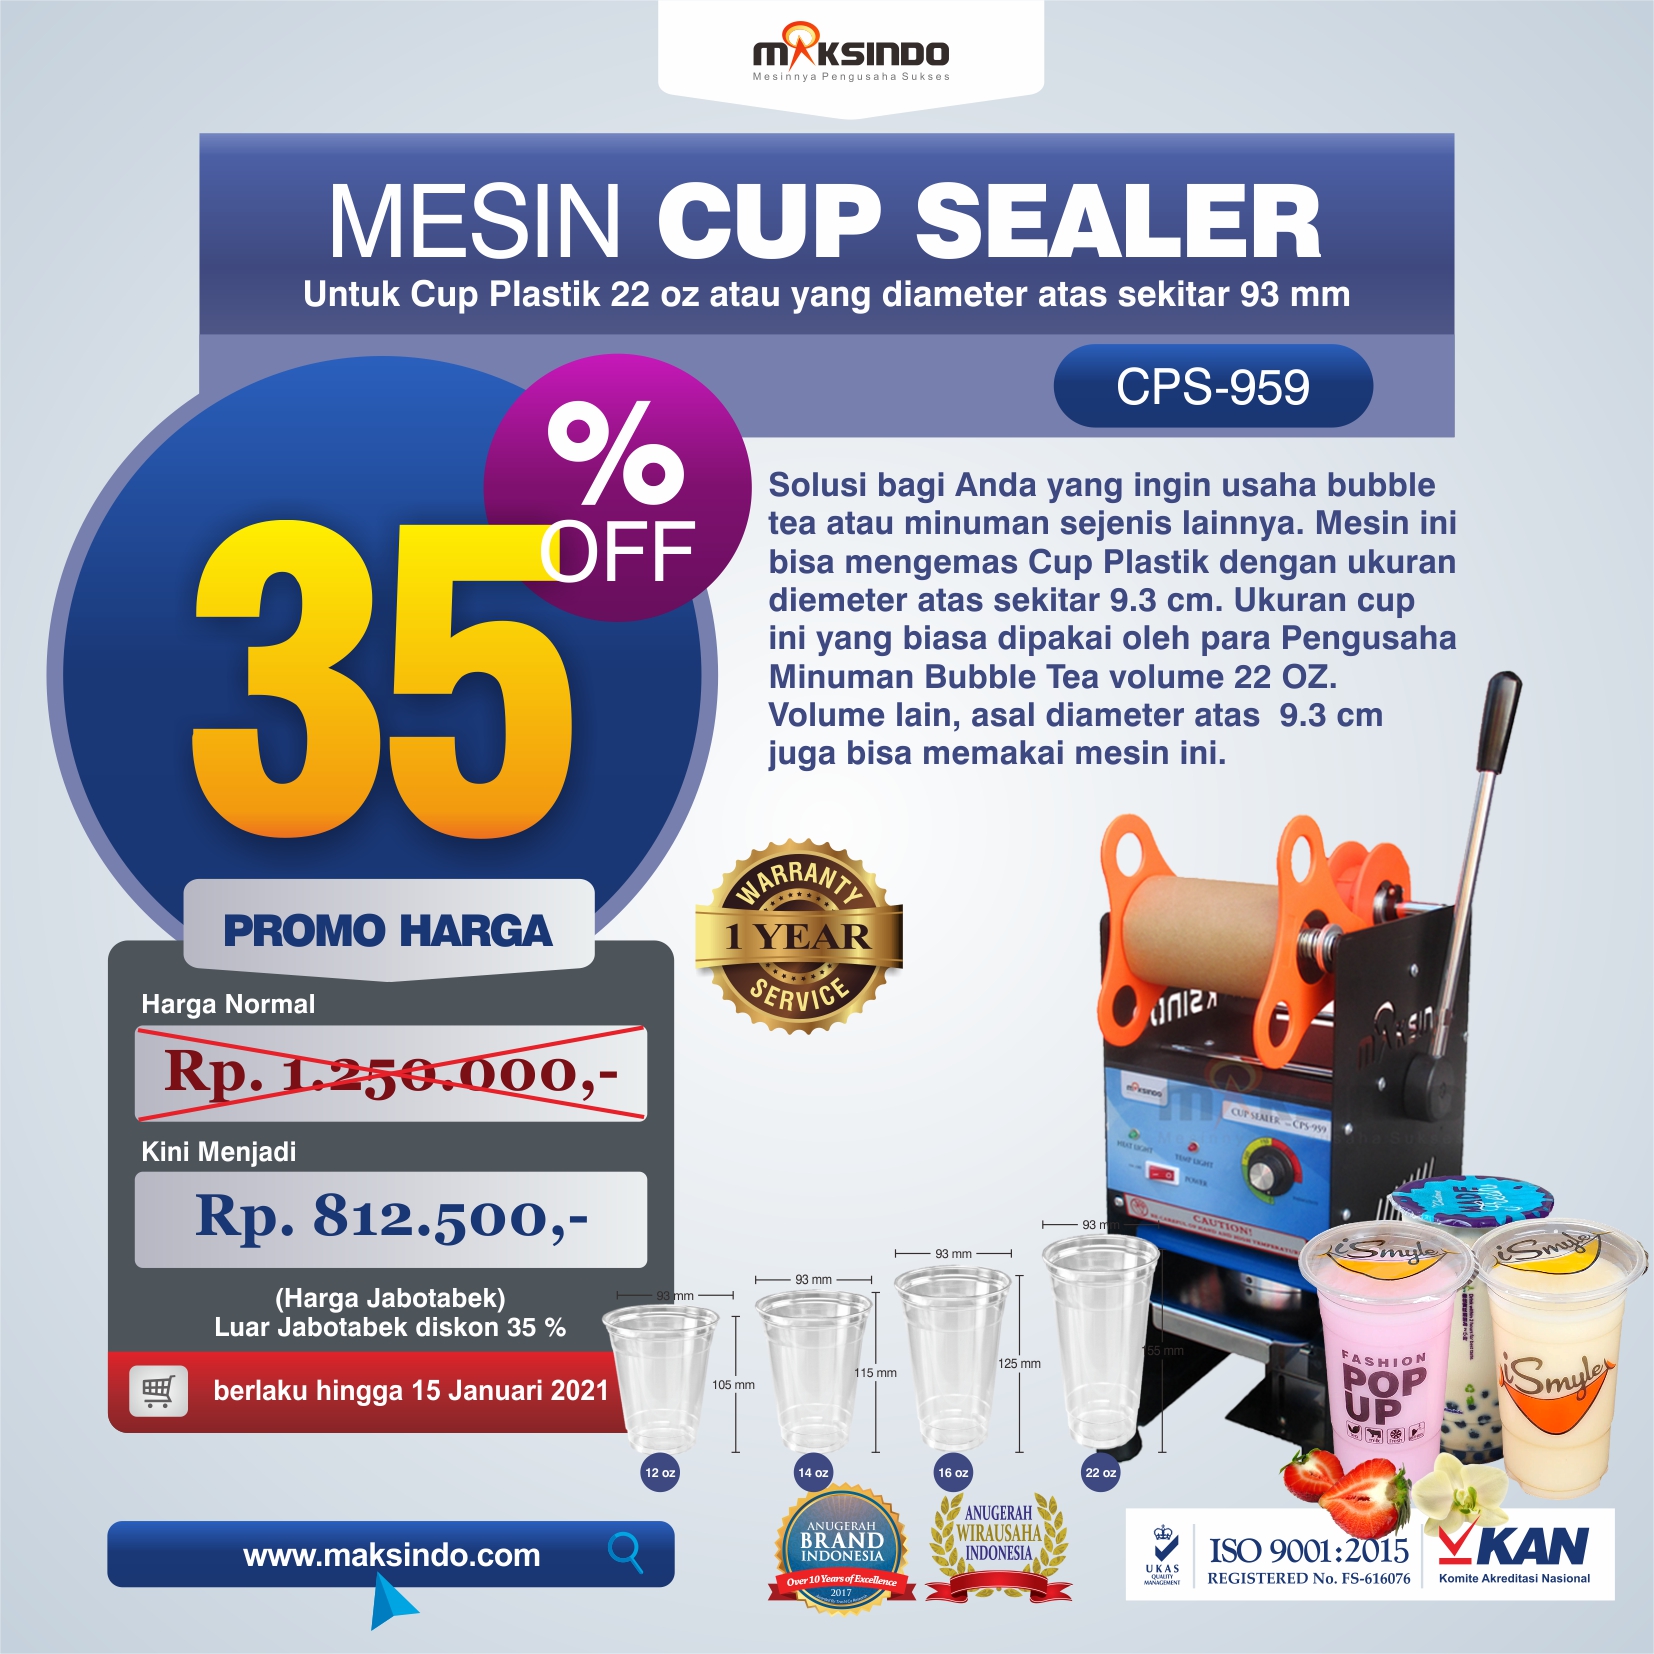 Jual Mesin Cup Sealer CPS-959 di Semarang